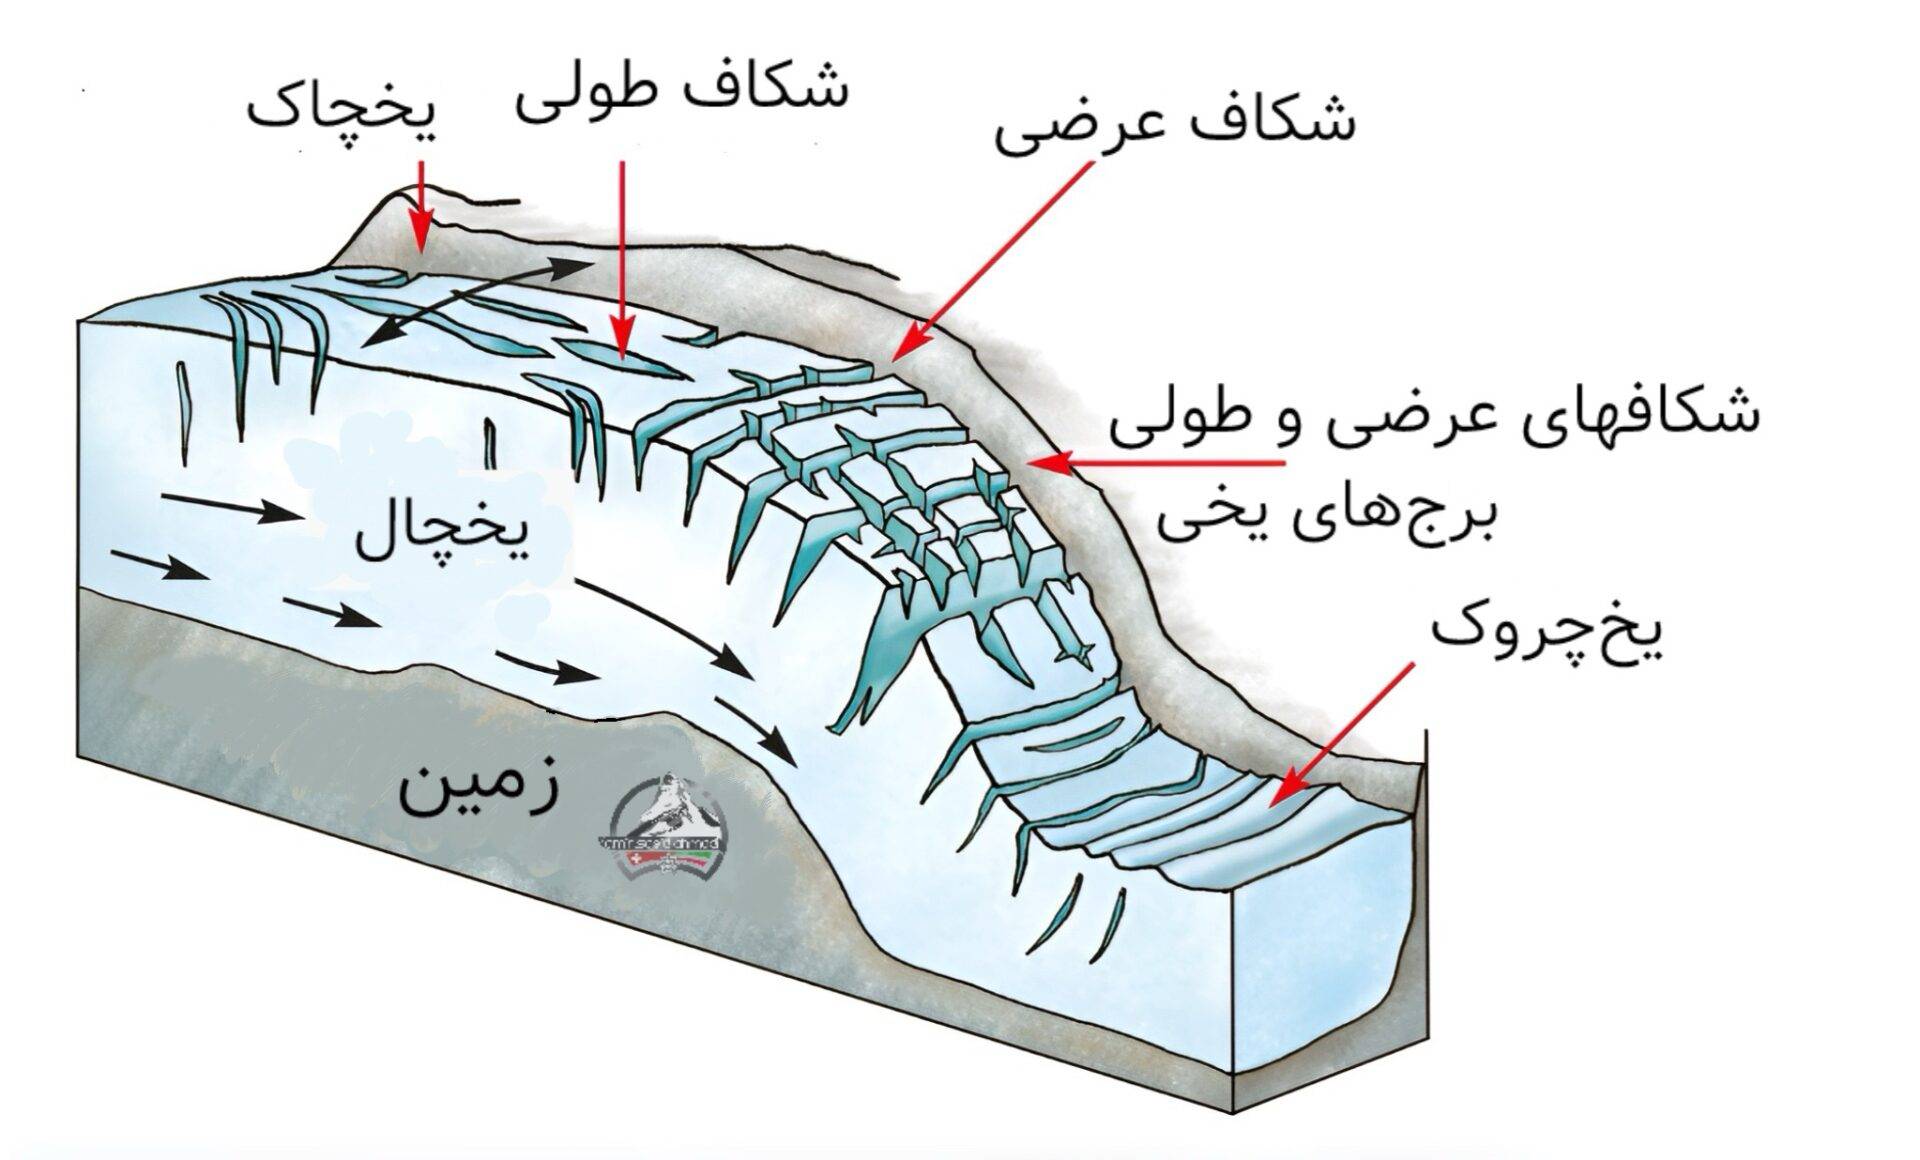 آناتومی یخچال طبیعی کوهستانی : (تصویر شماره ۴)